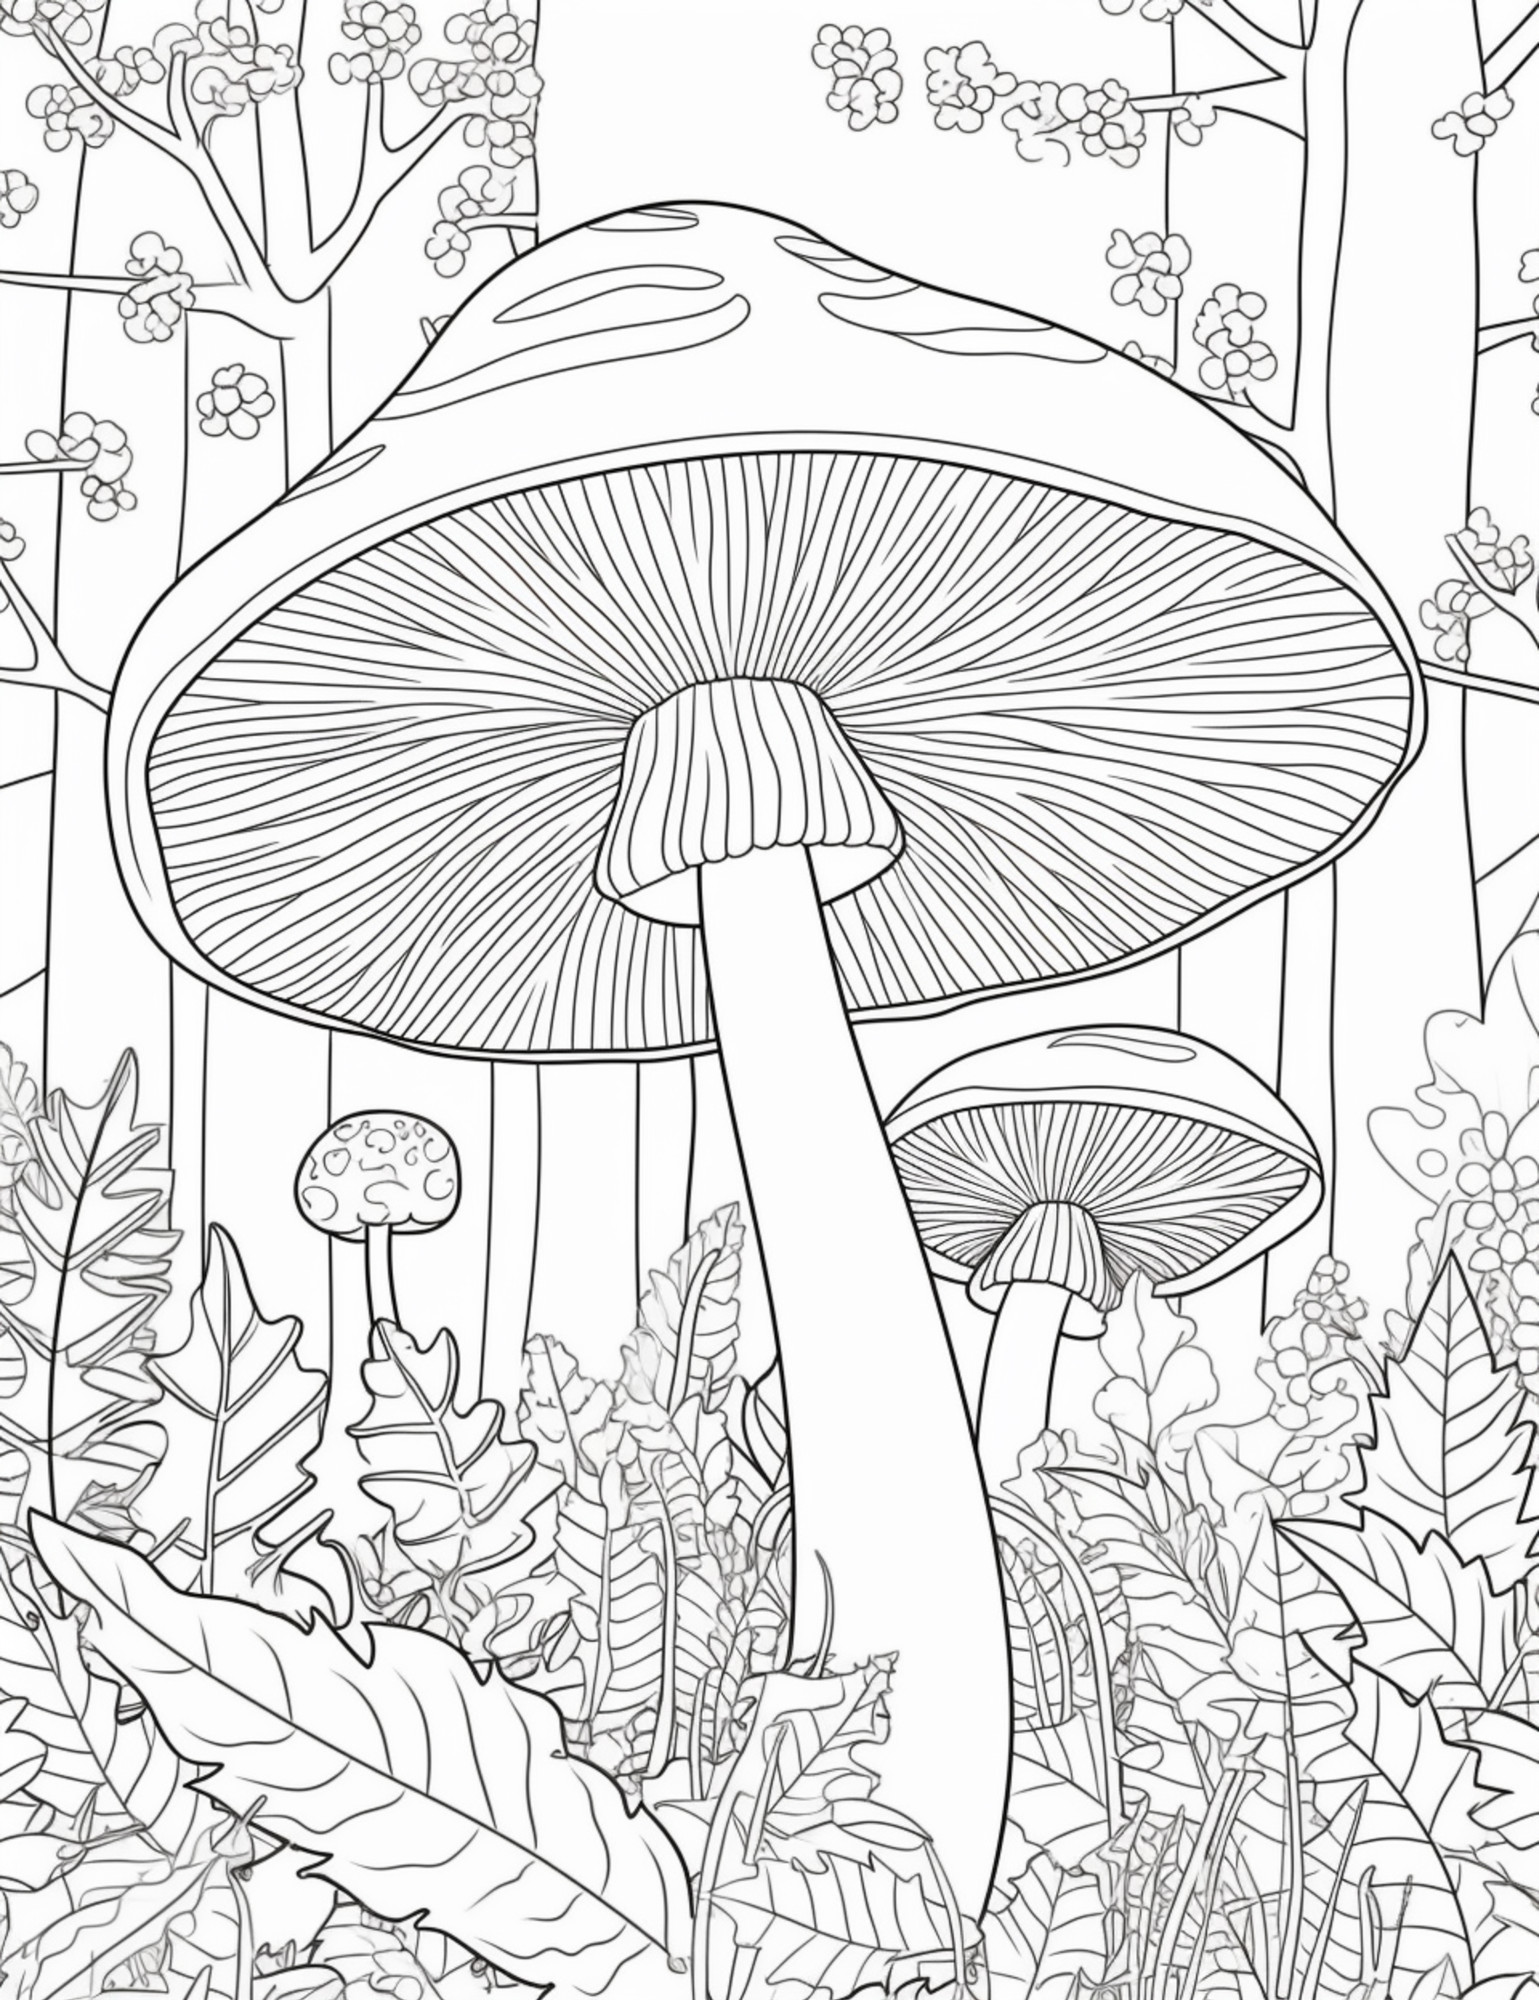 Раскраска для детей: лес с грибами